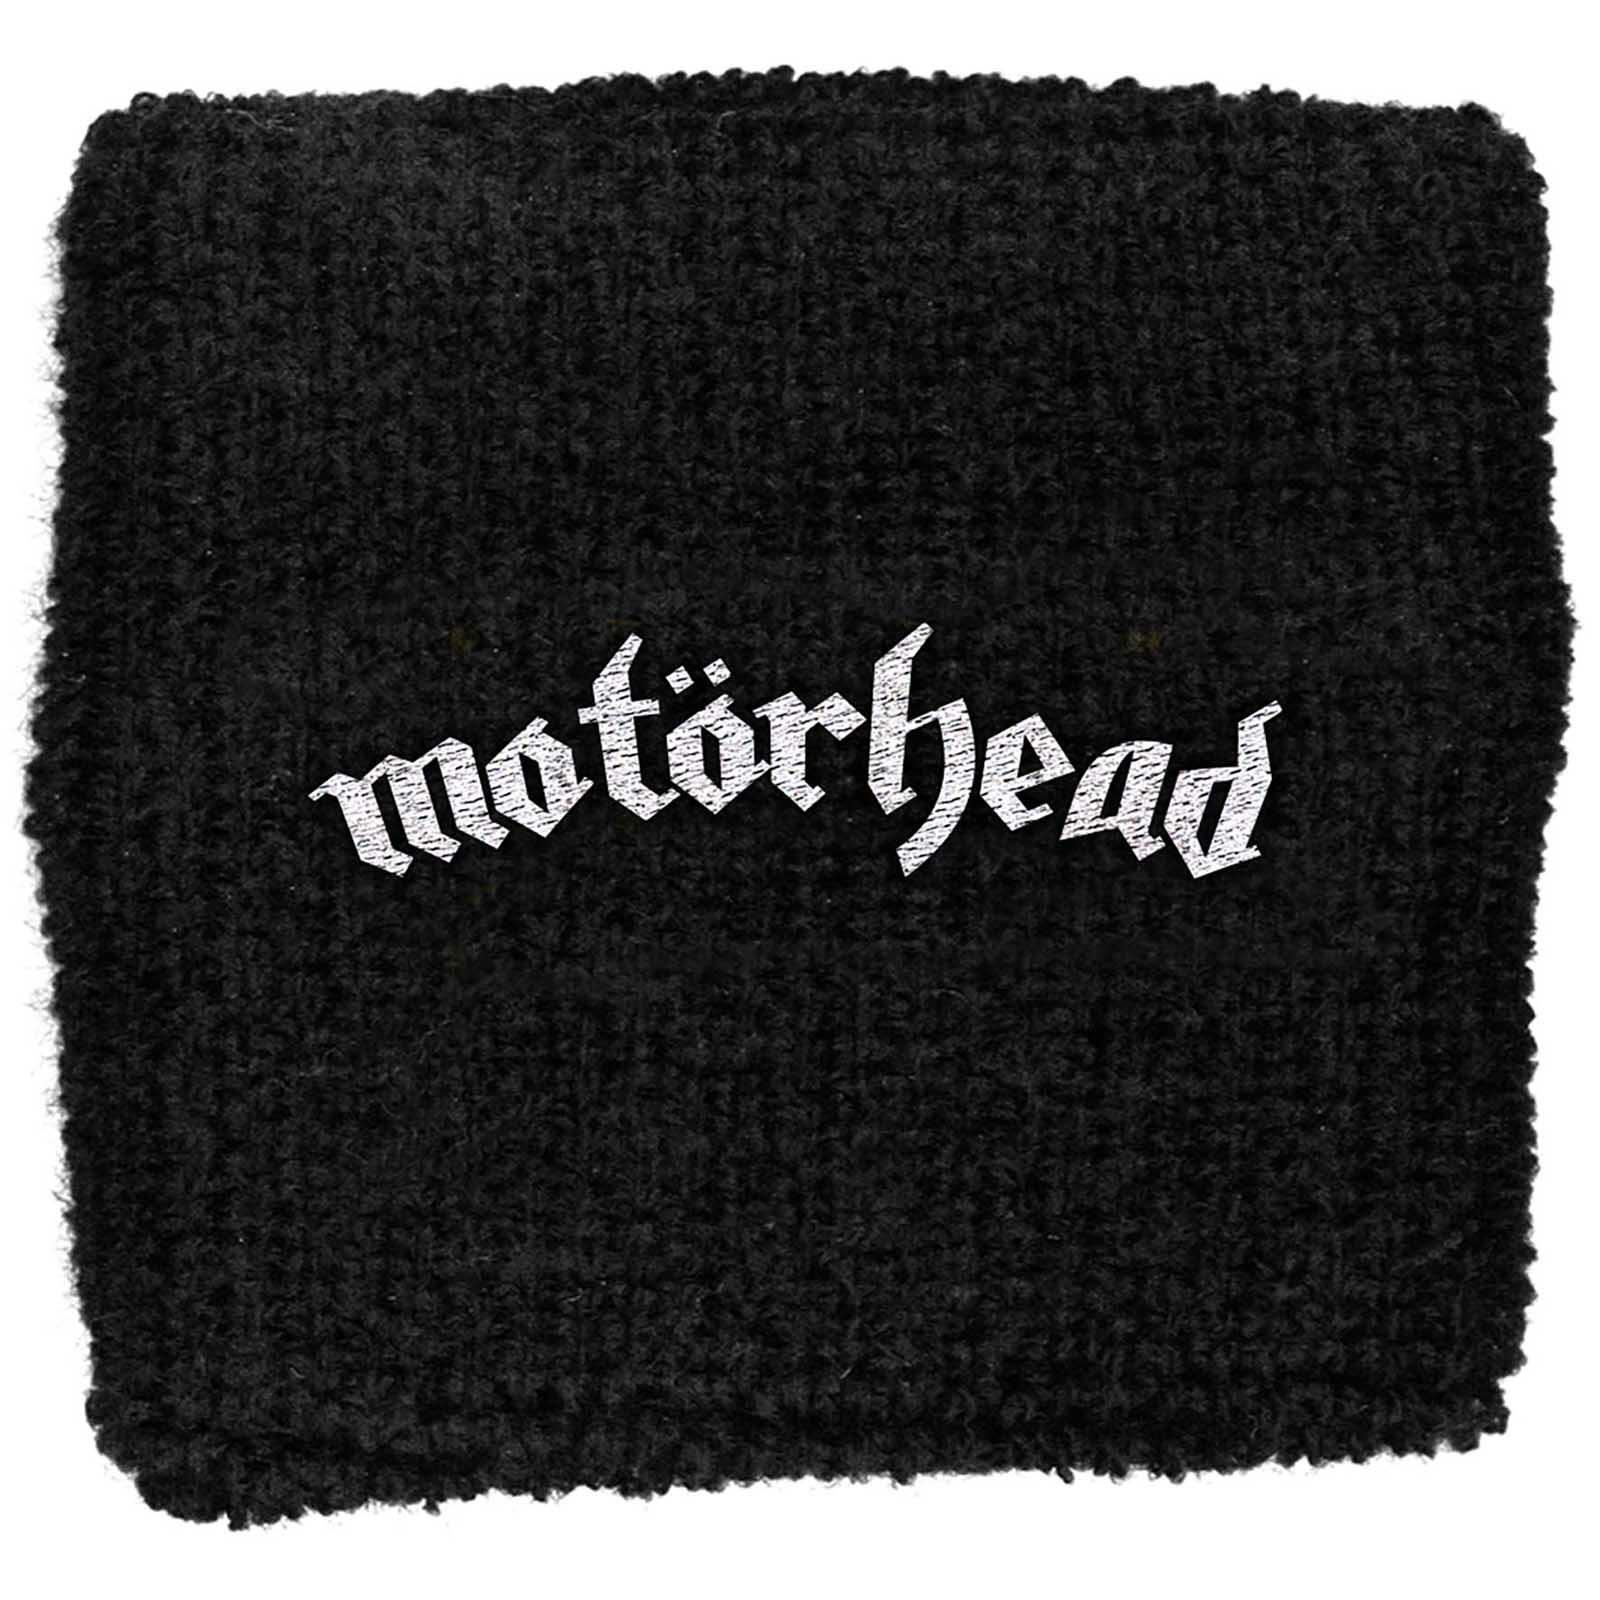 (モーターヘッド) Motorhead オフィシャル商品 ロゴ リストバンド 布地 スエットバンド 【海外通販】